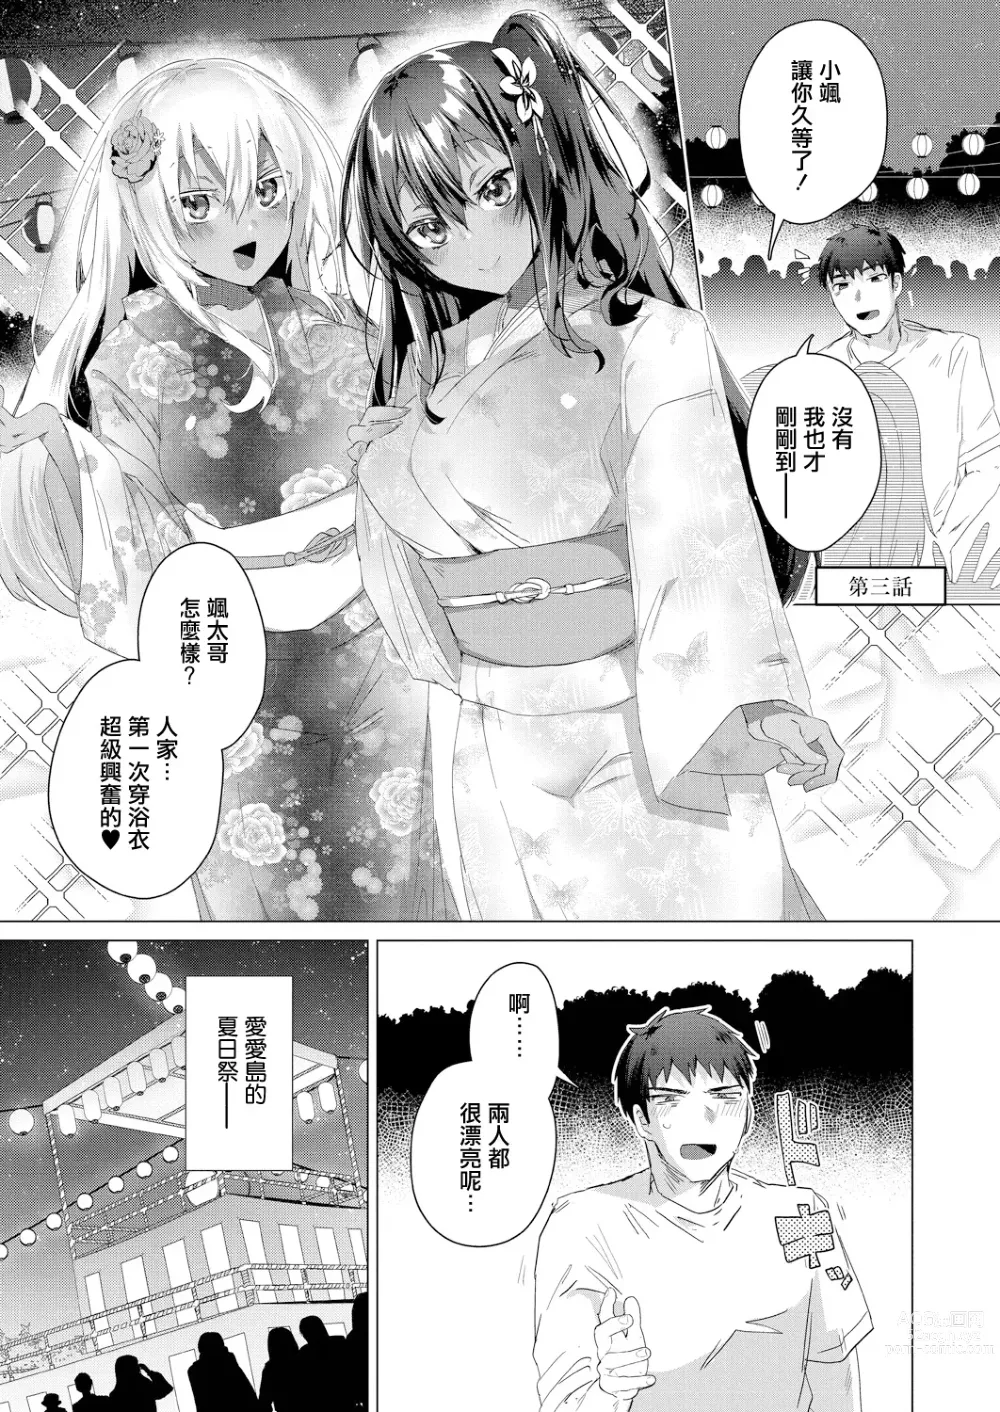 Page 1 of manga Komugiiro no Natsu-tachi Ch. 3